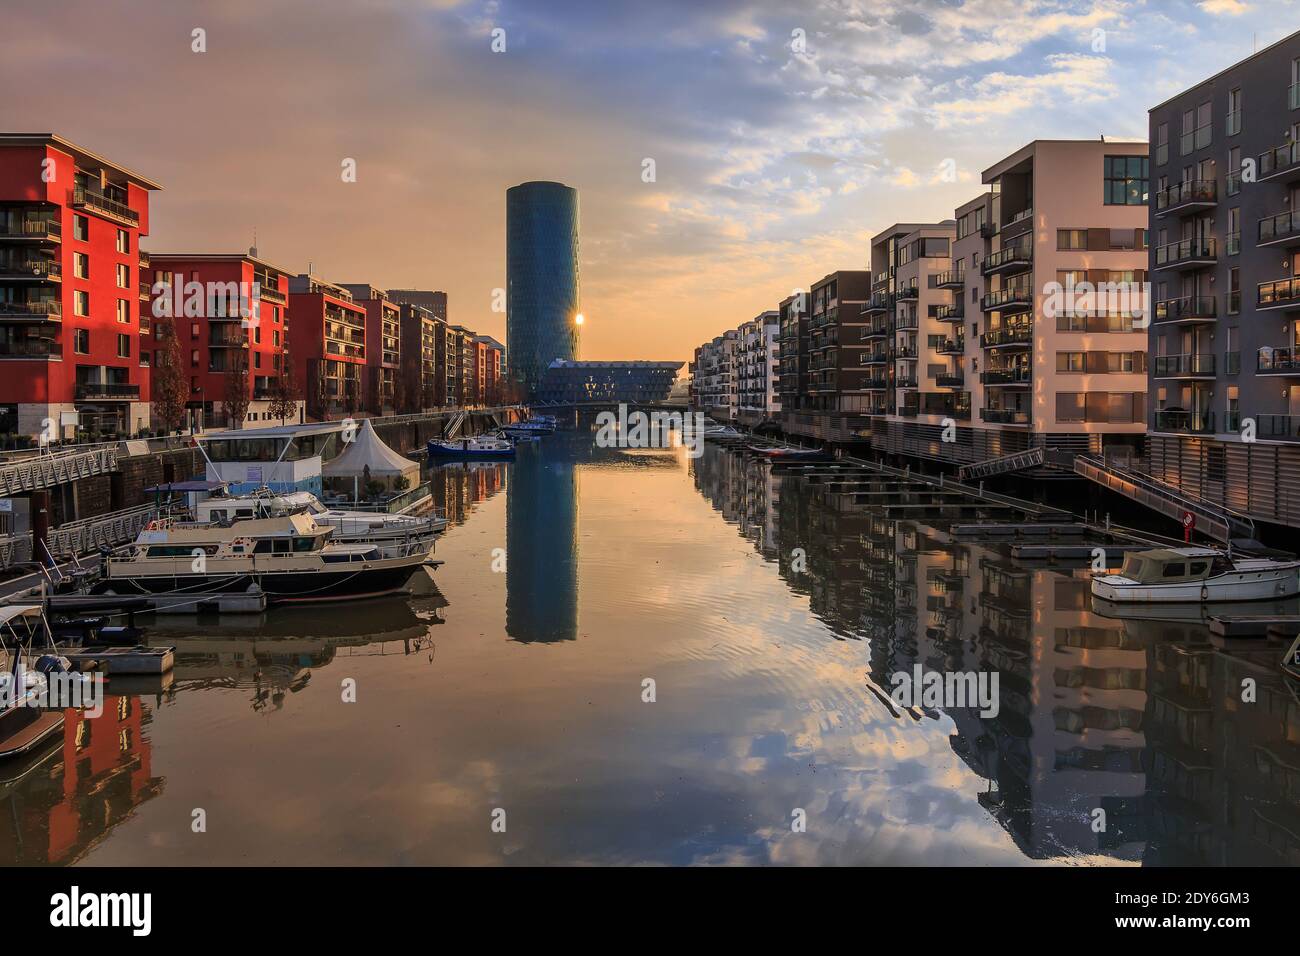 Hafen im Kanal des Mains in Frankfurt. West Harbor Wohngebiet am Morgen bei Sonnenaufgang. Am Wasser mit Booten auf dem Pier und Refle Stockfoto